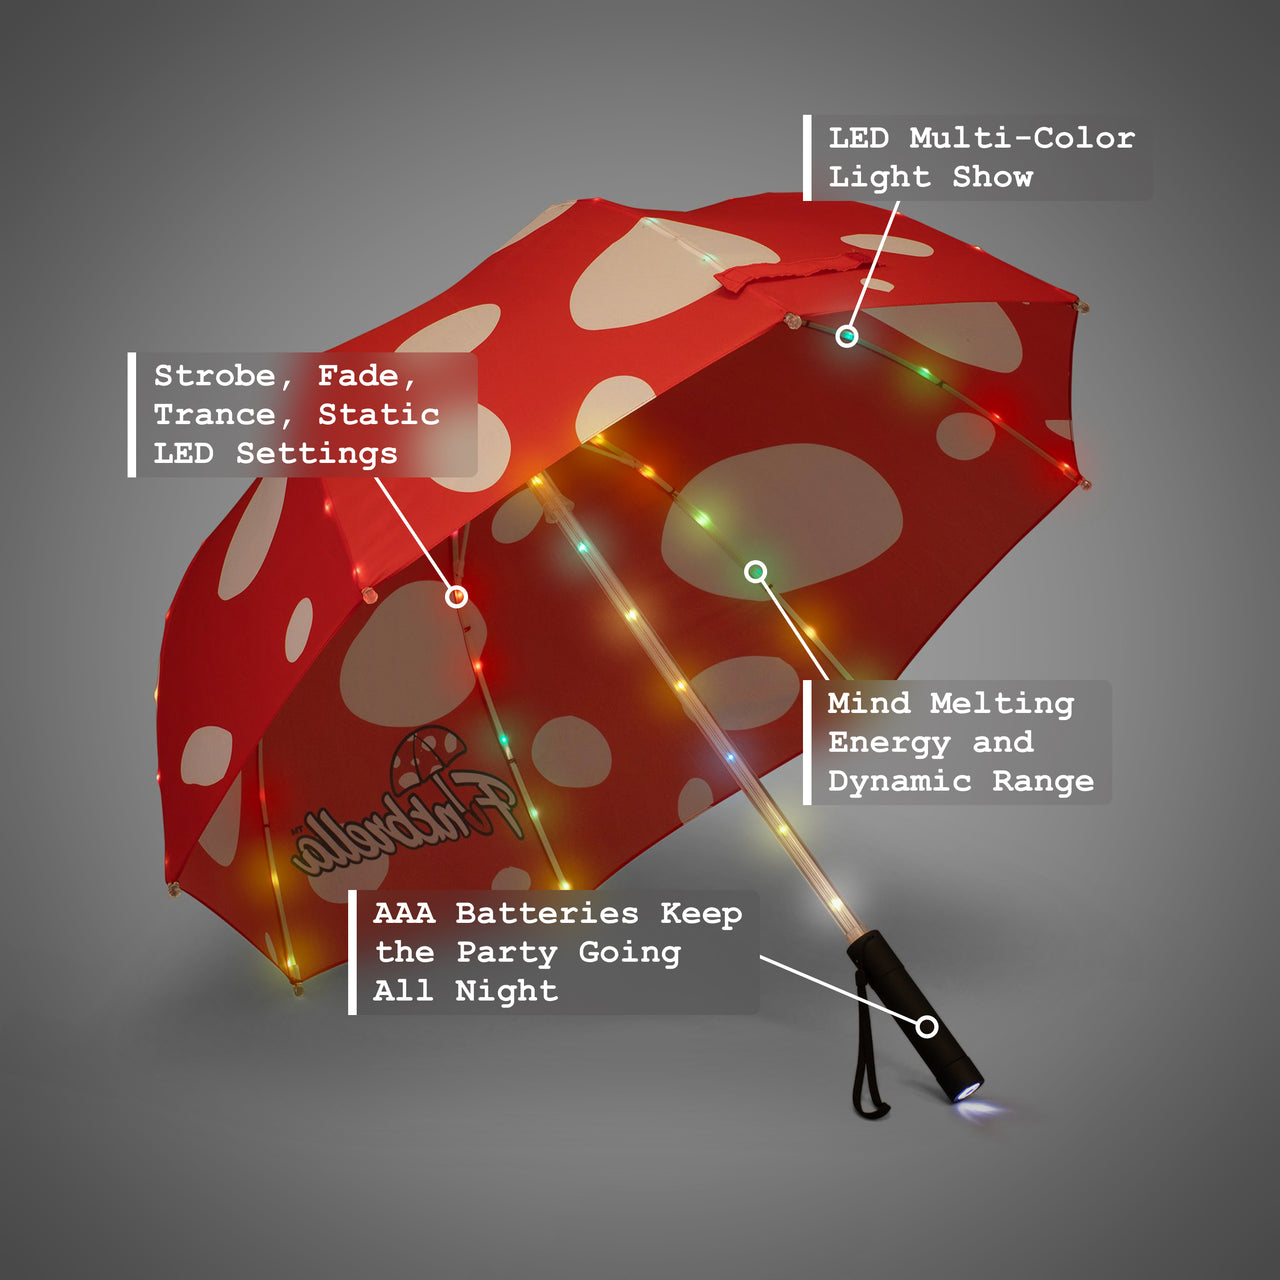 Magic Mushroom LED Umbrella with Multi-Color LED Light Show, Strobe, Fade, Static LED Settings, AAA Batteries, 47” Canopy